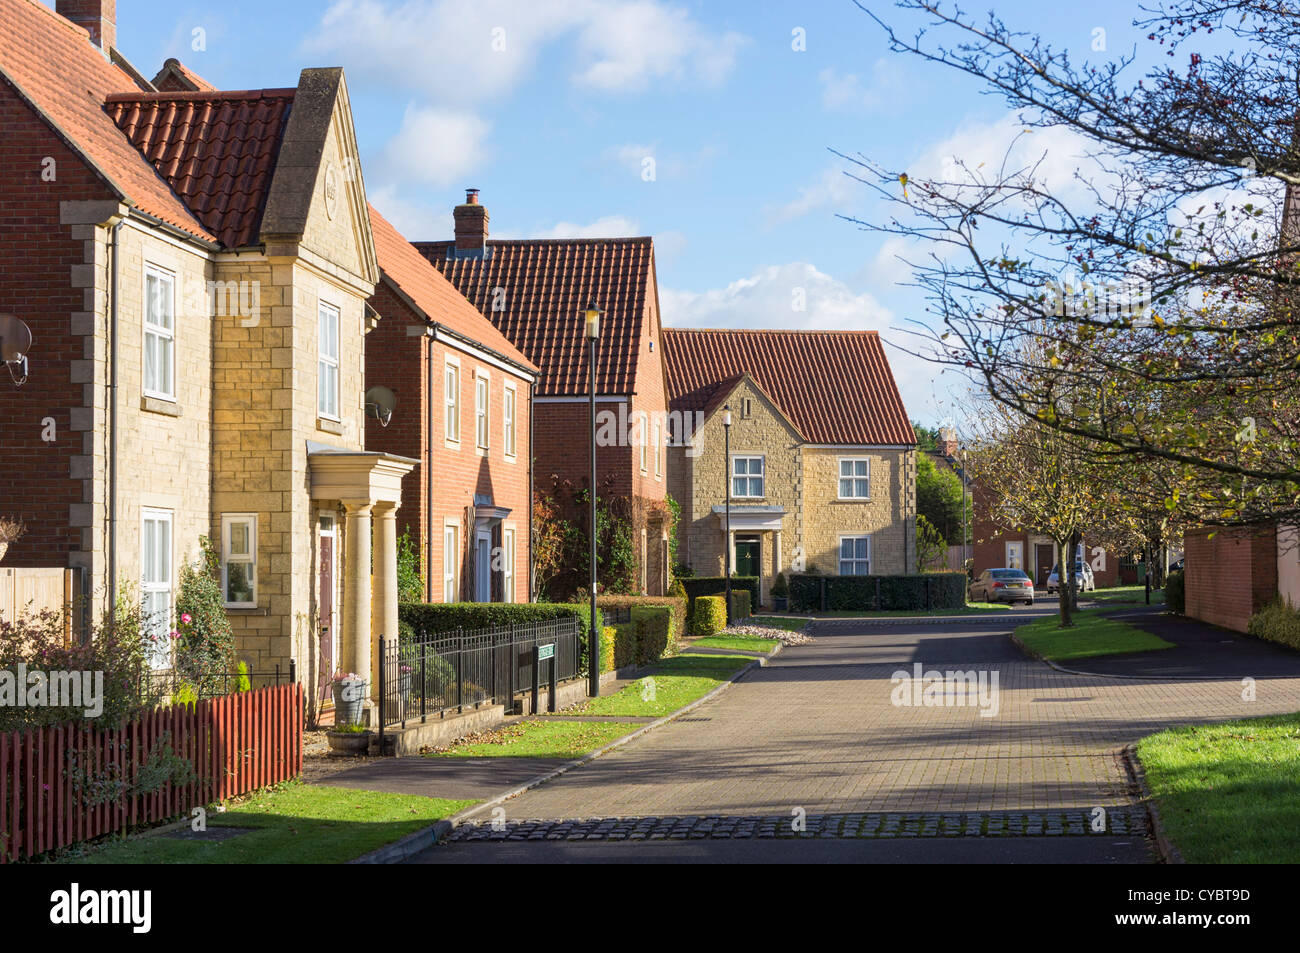 Un tipico British moderna edilizia residenziale di sviluppo immobiliare e street, England, Regno Unito - Ducato di Cornovaglia sviluppo Foto Stock